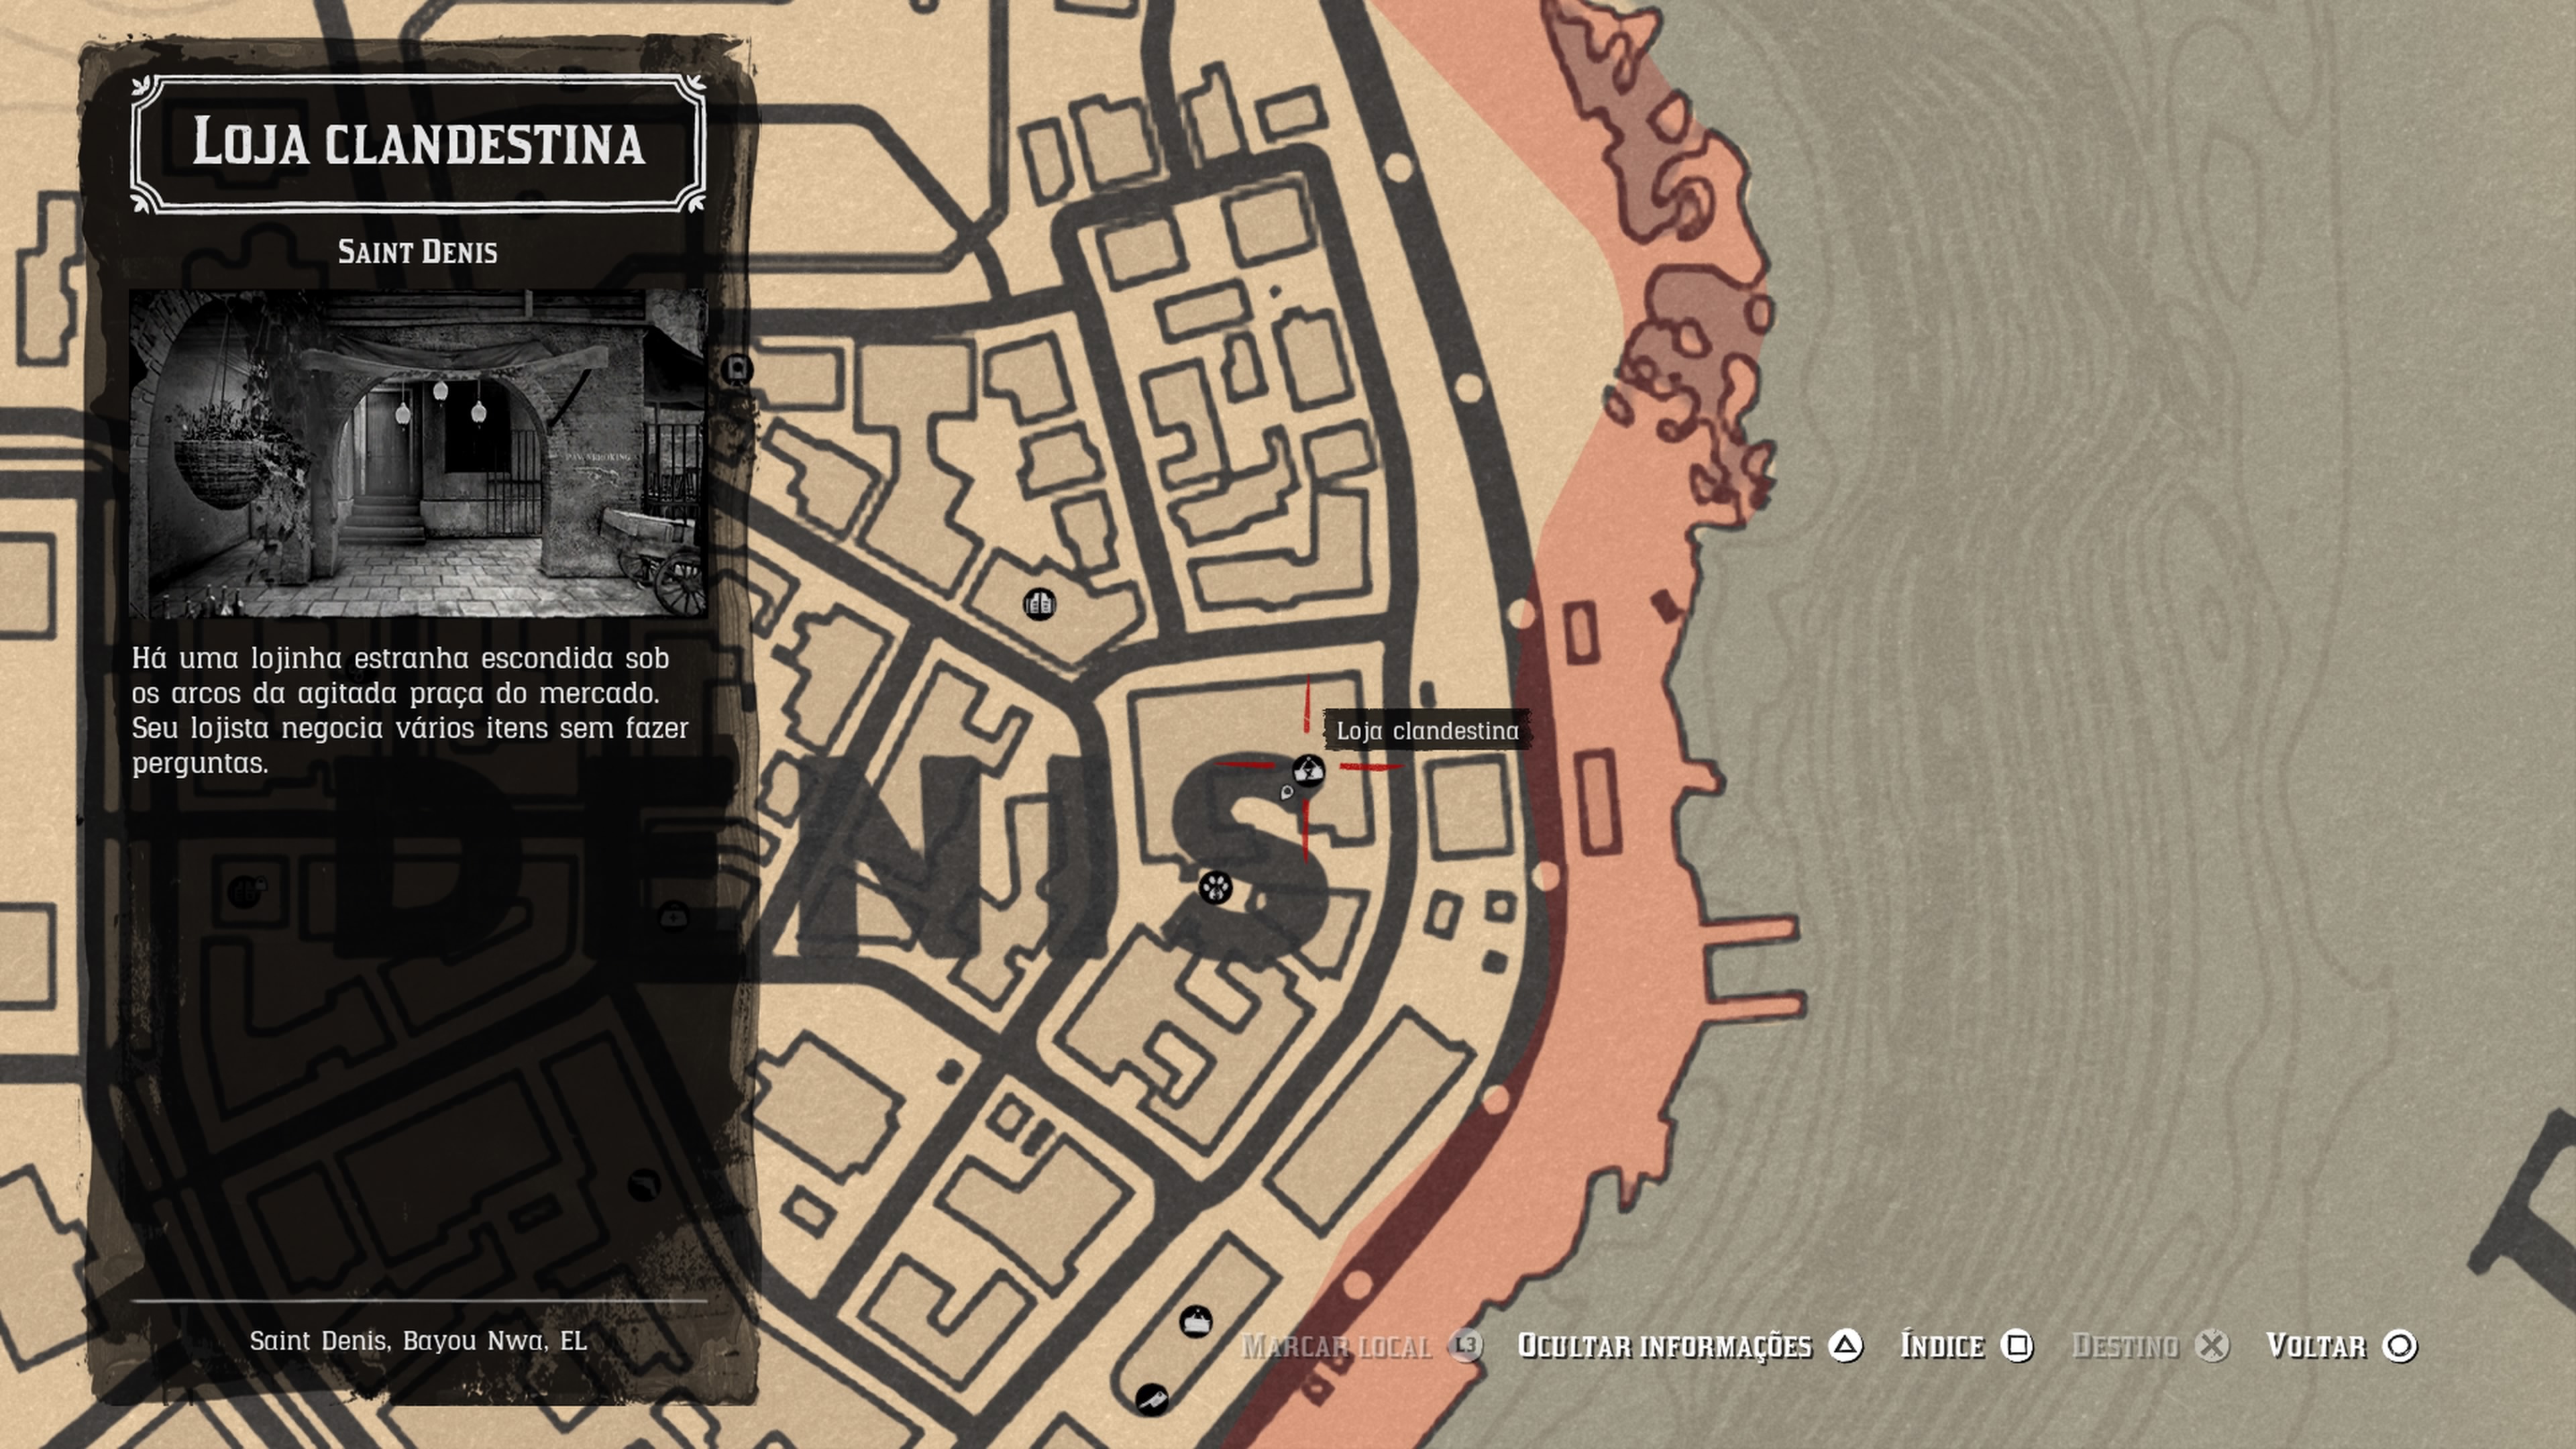 Red Dead Online Glitch do Mapa e Lago Isabella